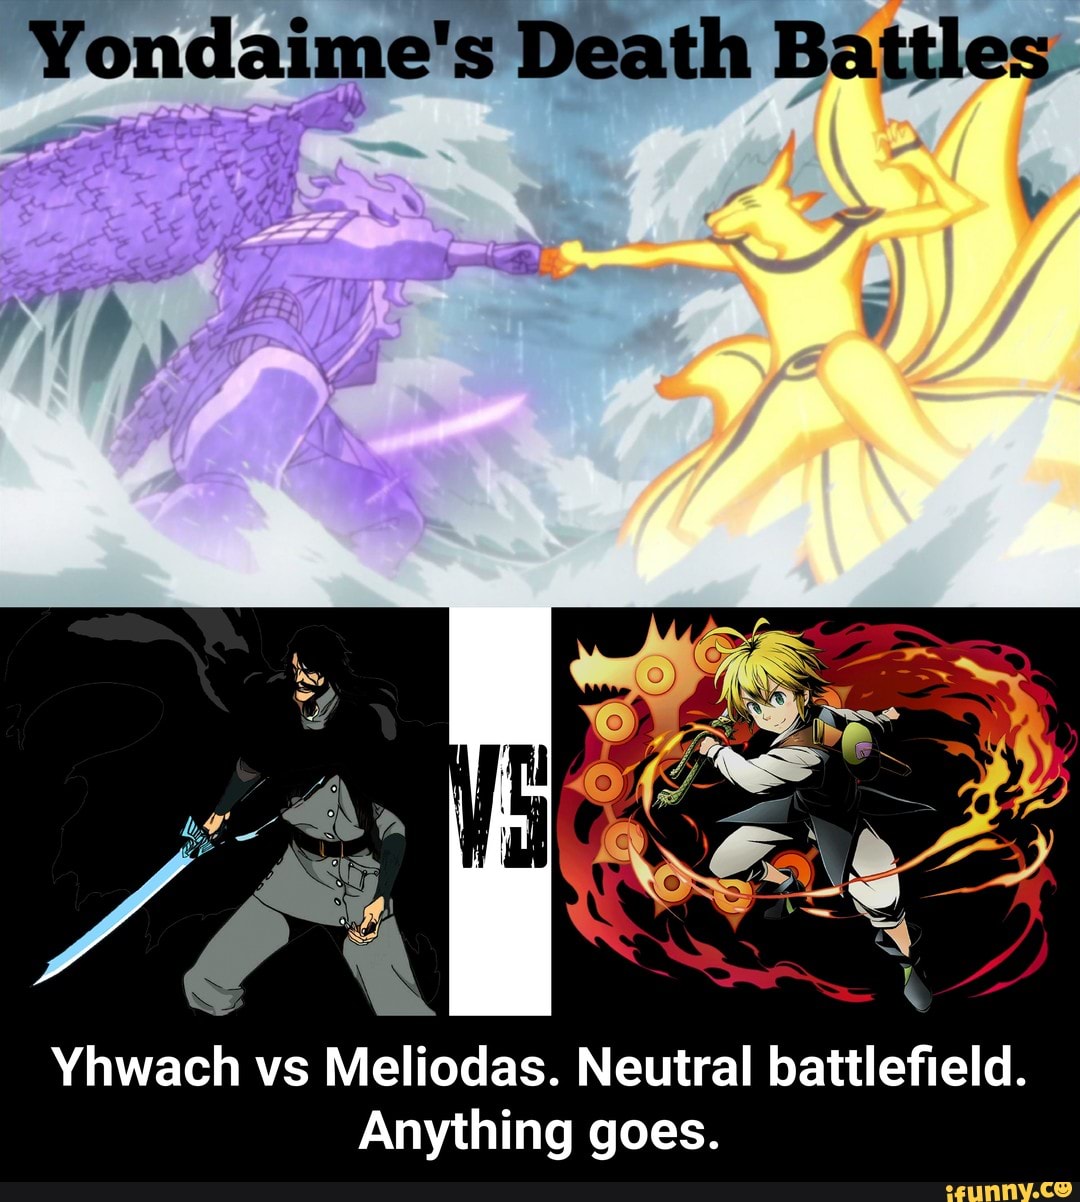 Versus Battle - Cosmic Garou vs Yhwach